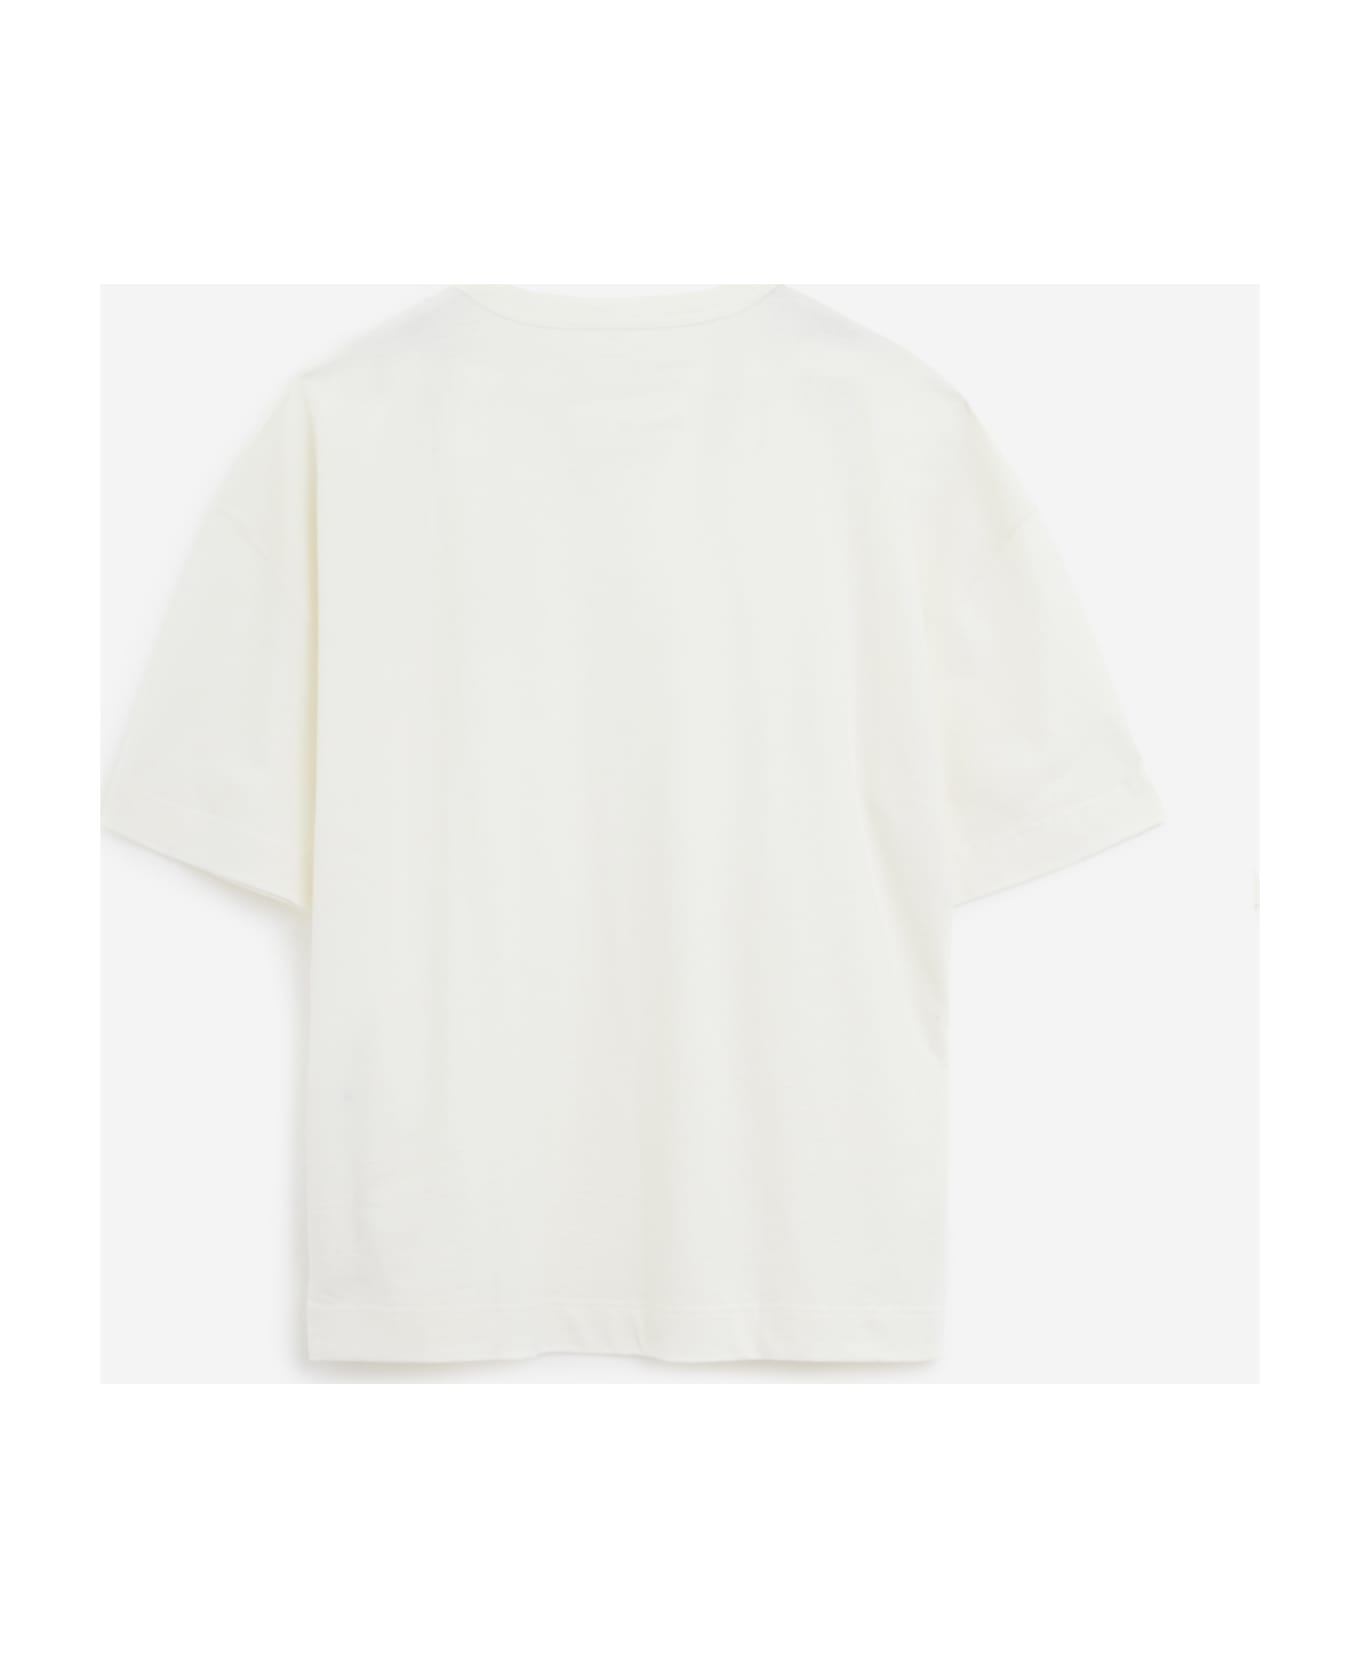 Lemaire Pocket T-shirt - white